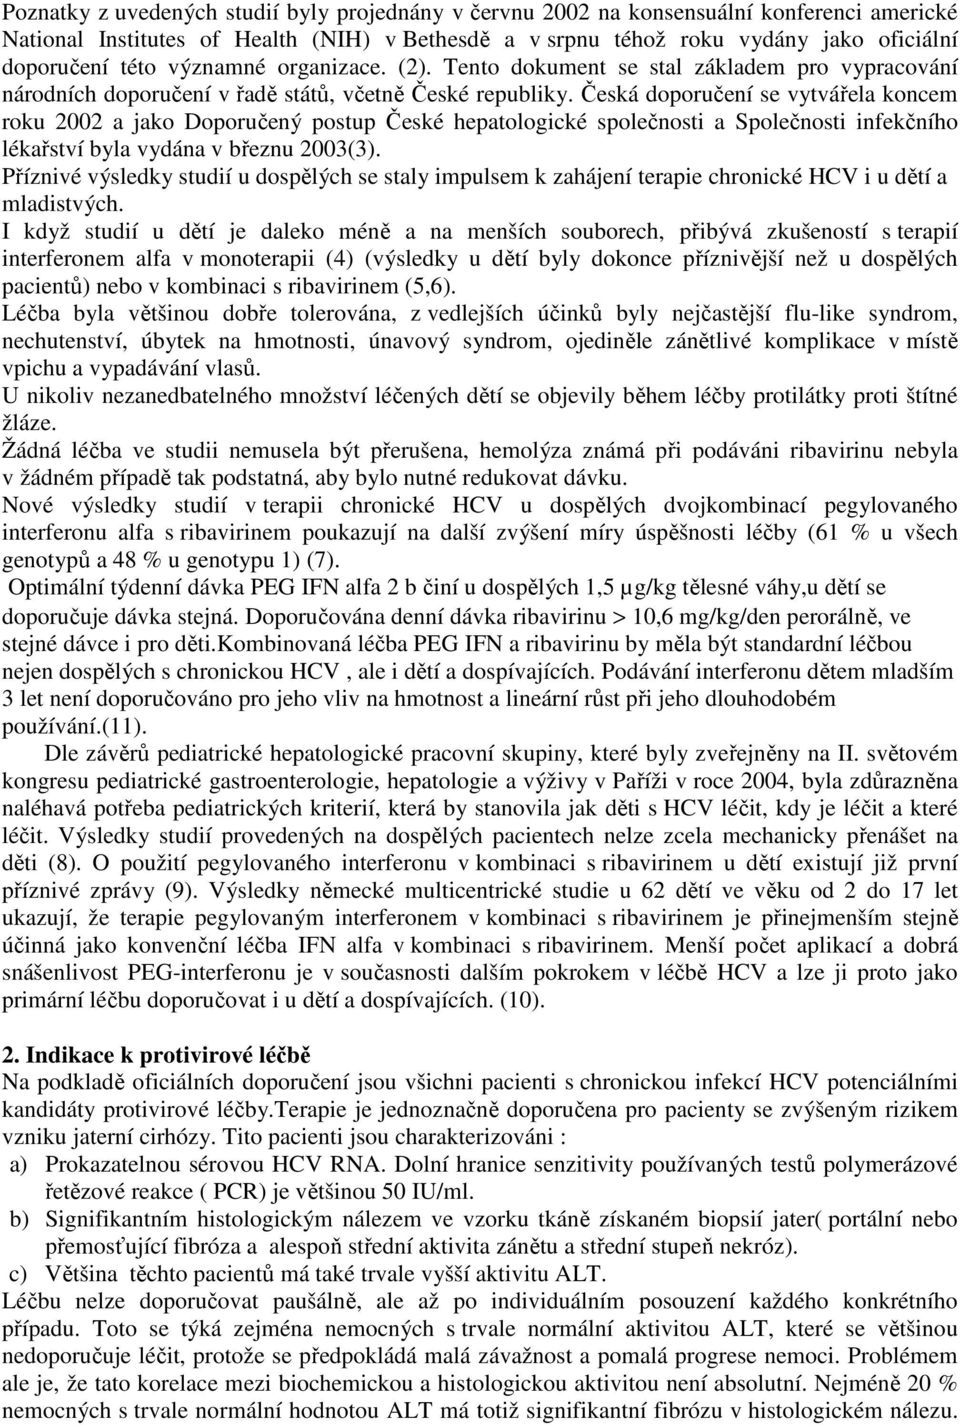 Česká doporučení se vytvářela koncem roku 2002 a jako Doporučený postup České hepatologické společnosti a Společnosti infekčního lékařství byla vydána v březnu 2003(3).